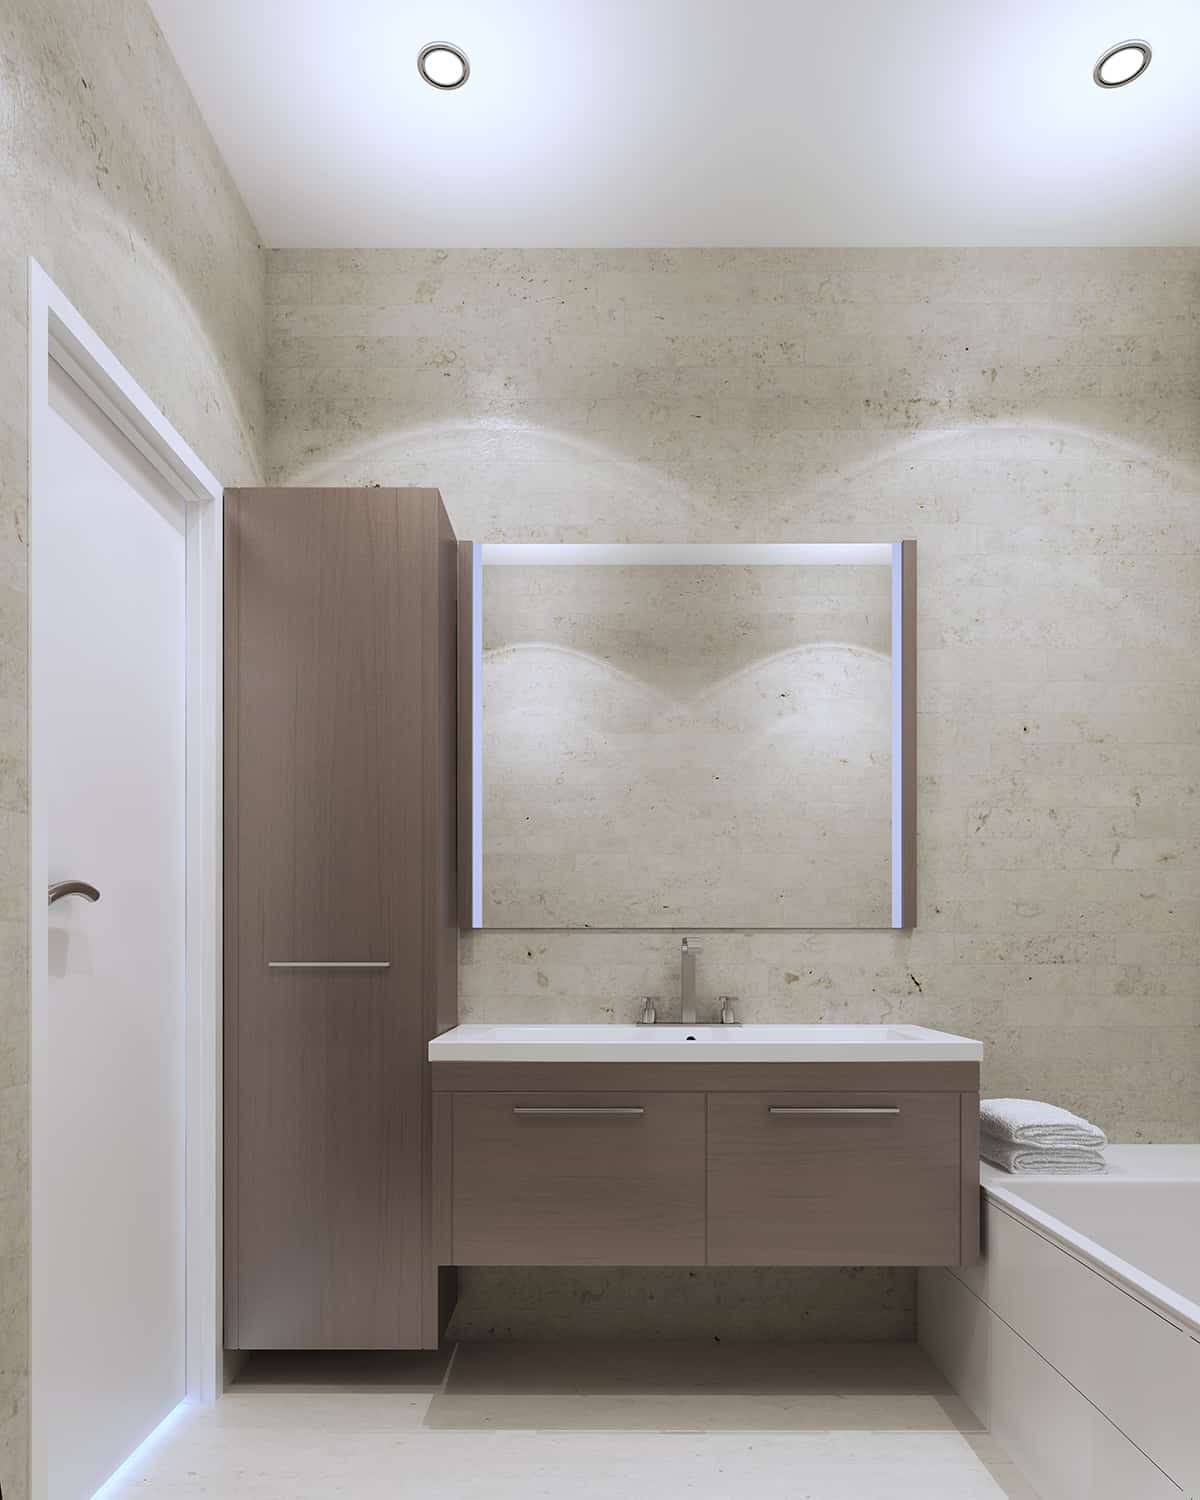 米色的牆壁和深灰色的浴室櫥櫃